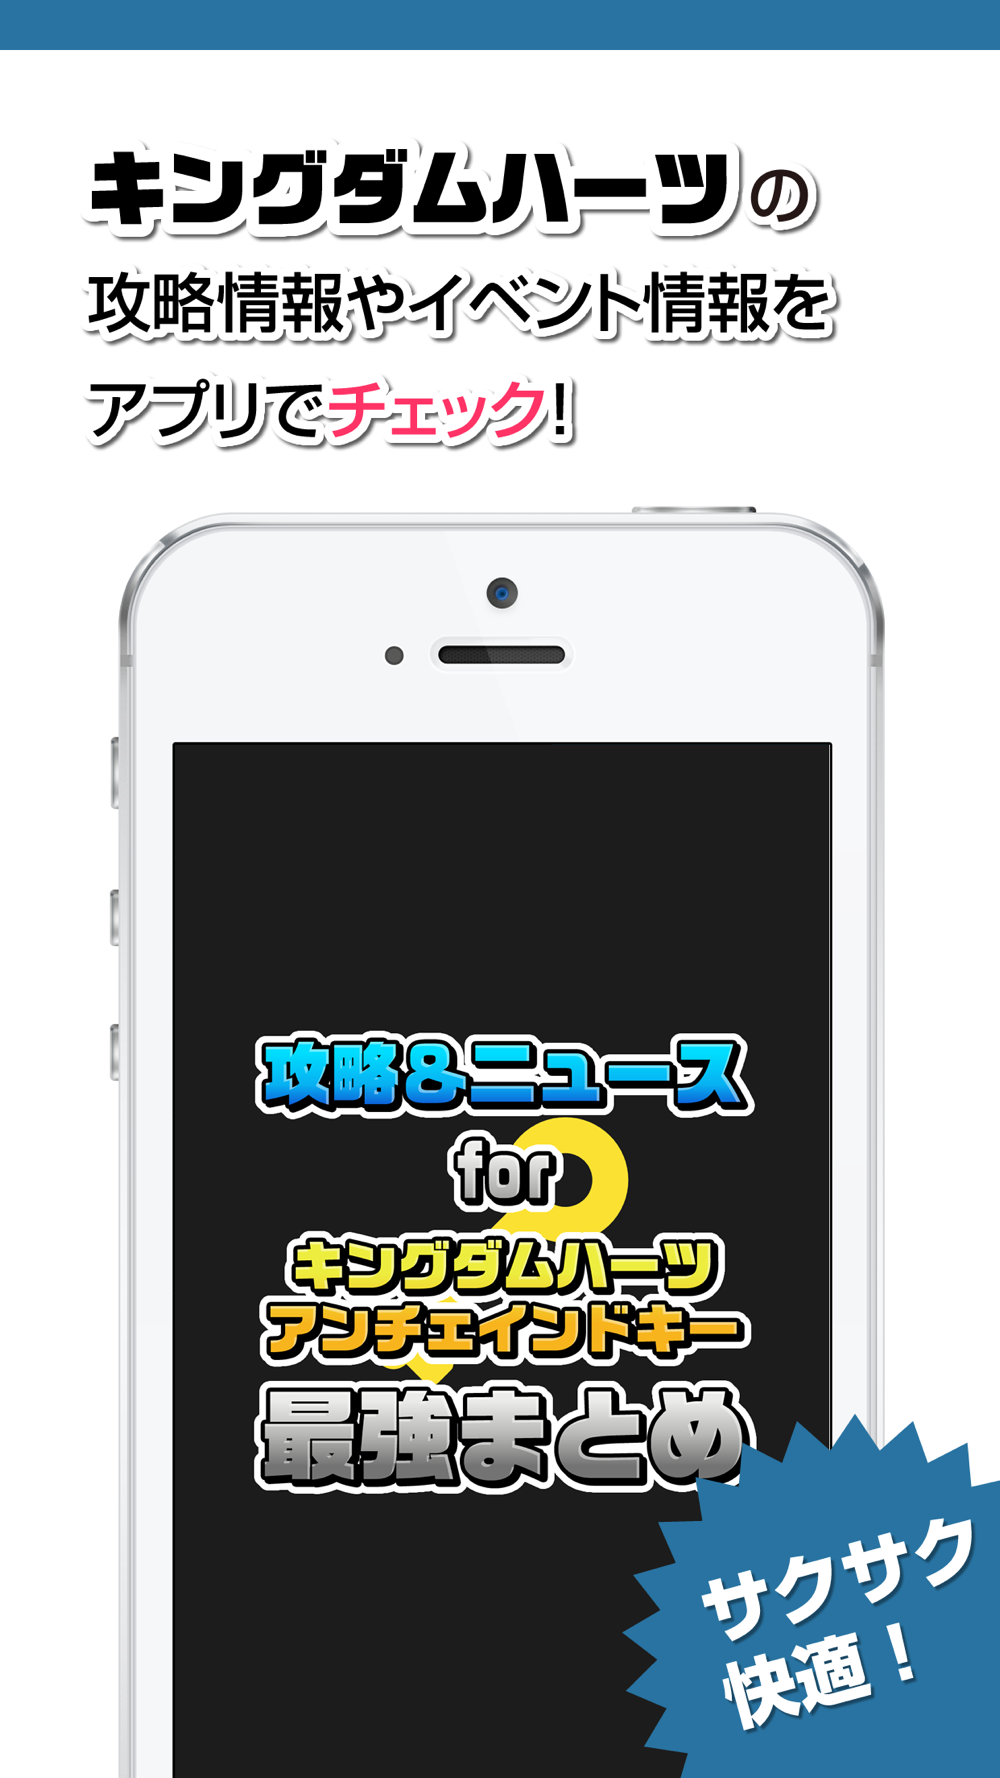 攻略ニュースまとめ速報 For キングダム ハーツ アンチェインド キーkhu Free Download App For Iphone Steprimo Com